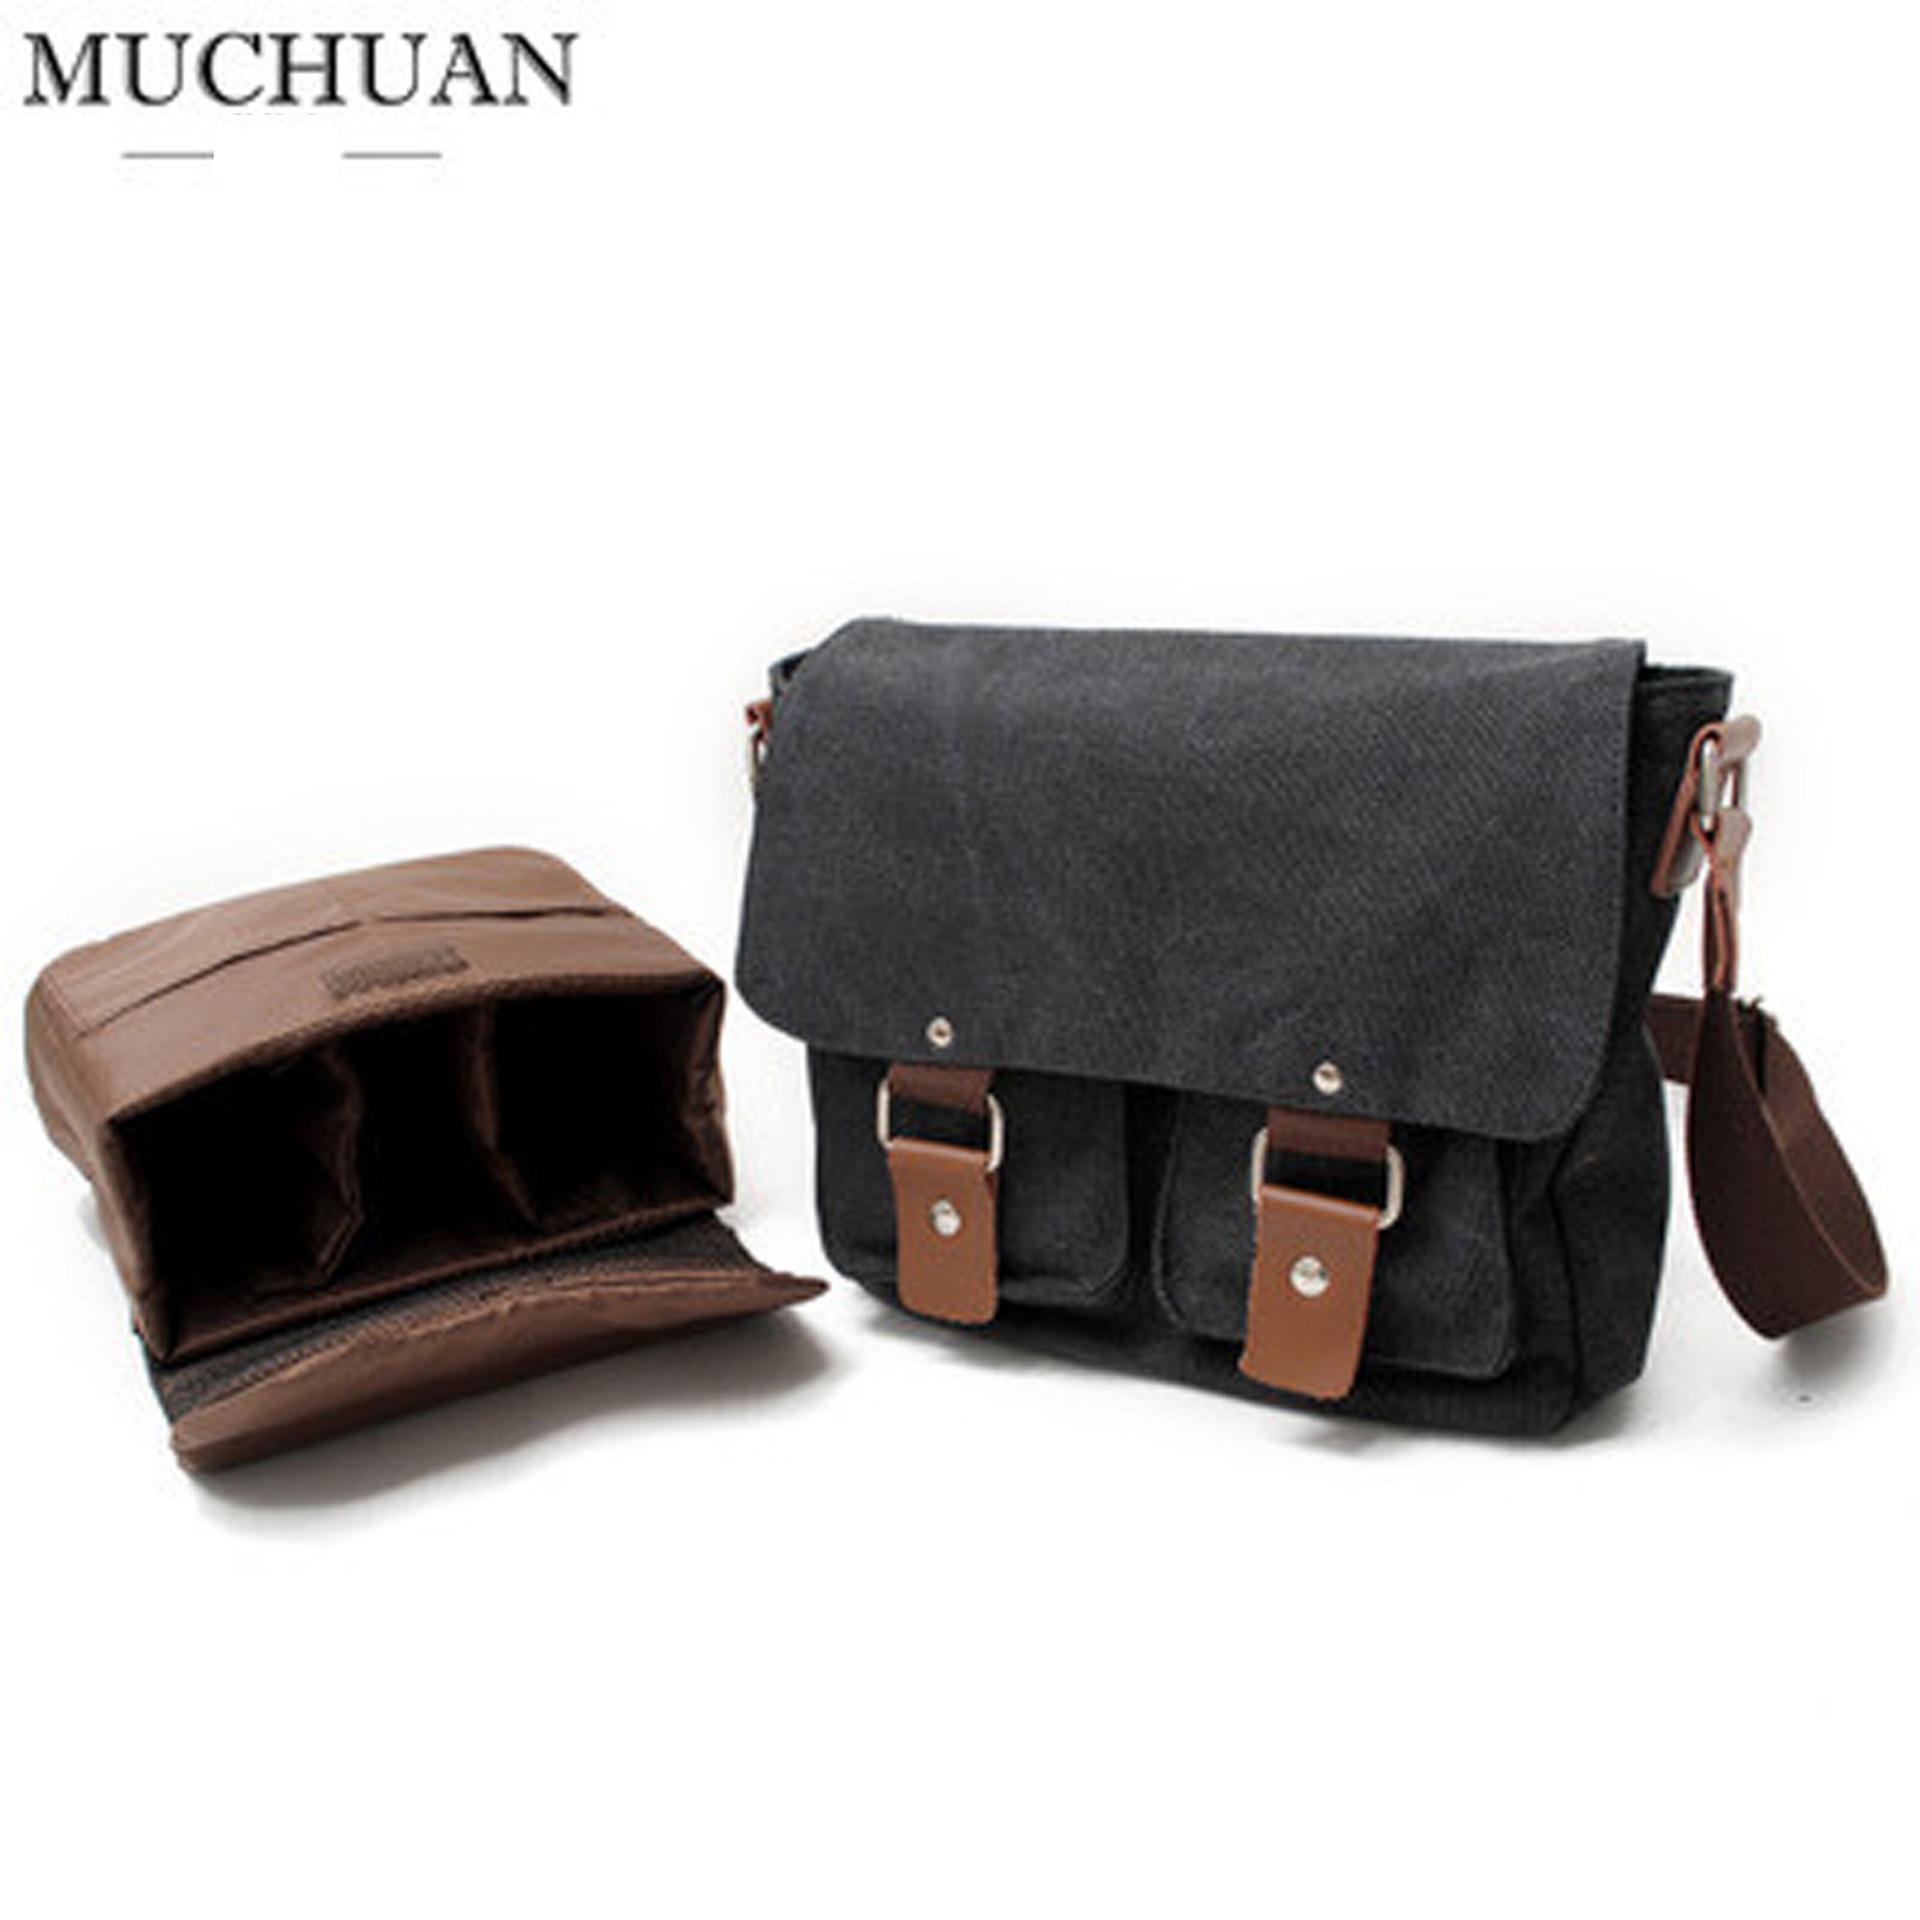 Túi chống sốc máy ảnh thời trang Muchuan Canvas 2101 đeo hông (đen ghi)